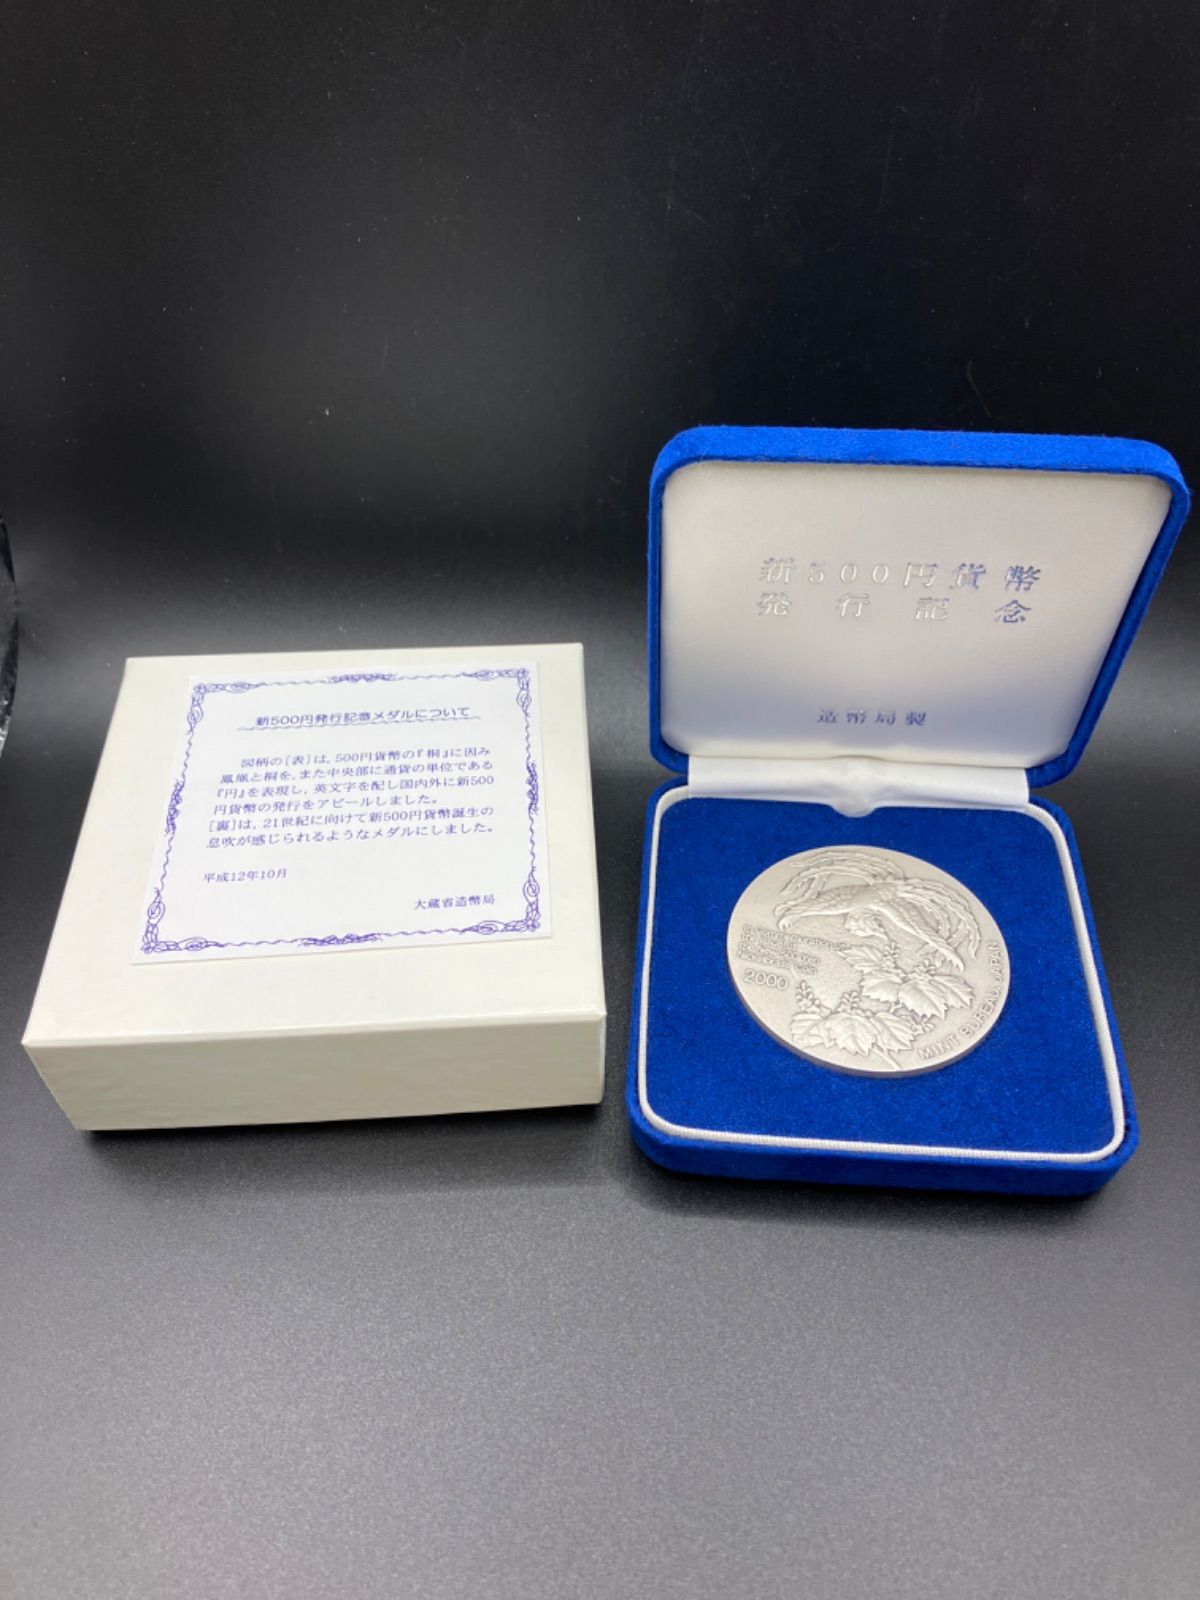 新500円発行記念メダル 造幣局刻印入り | www.esn-ub.org